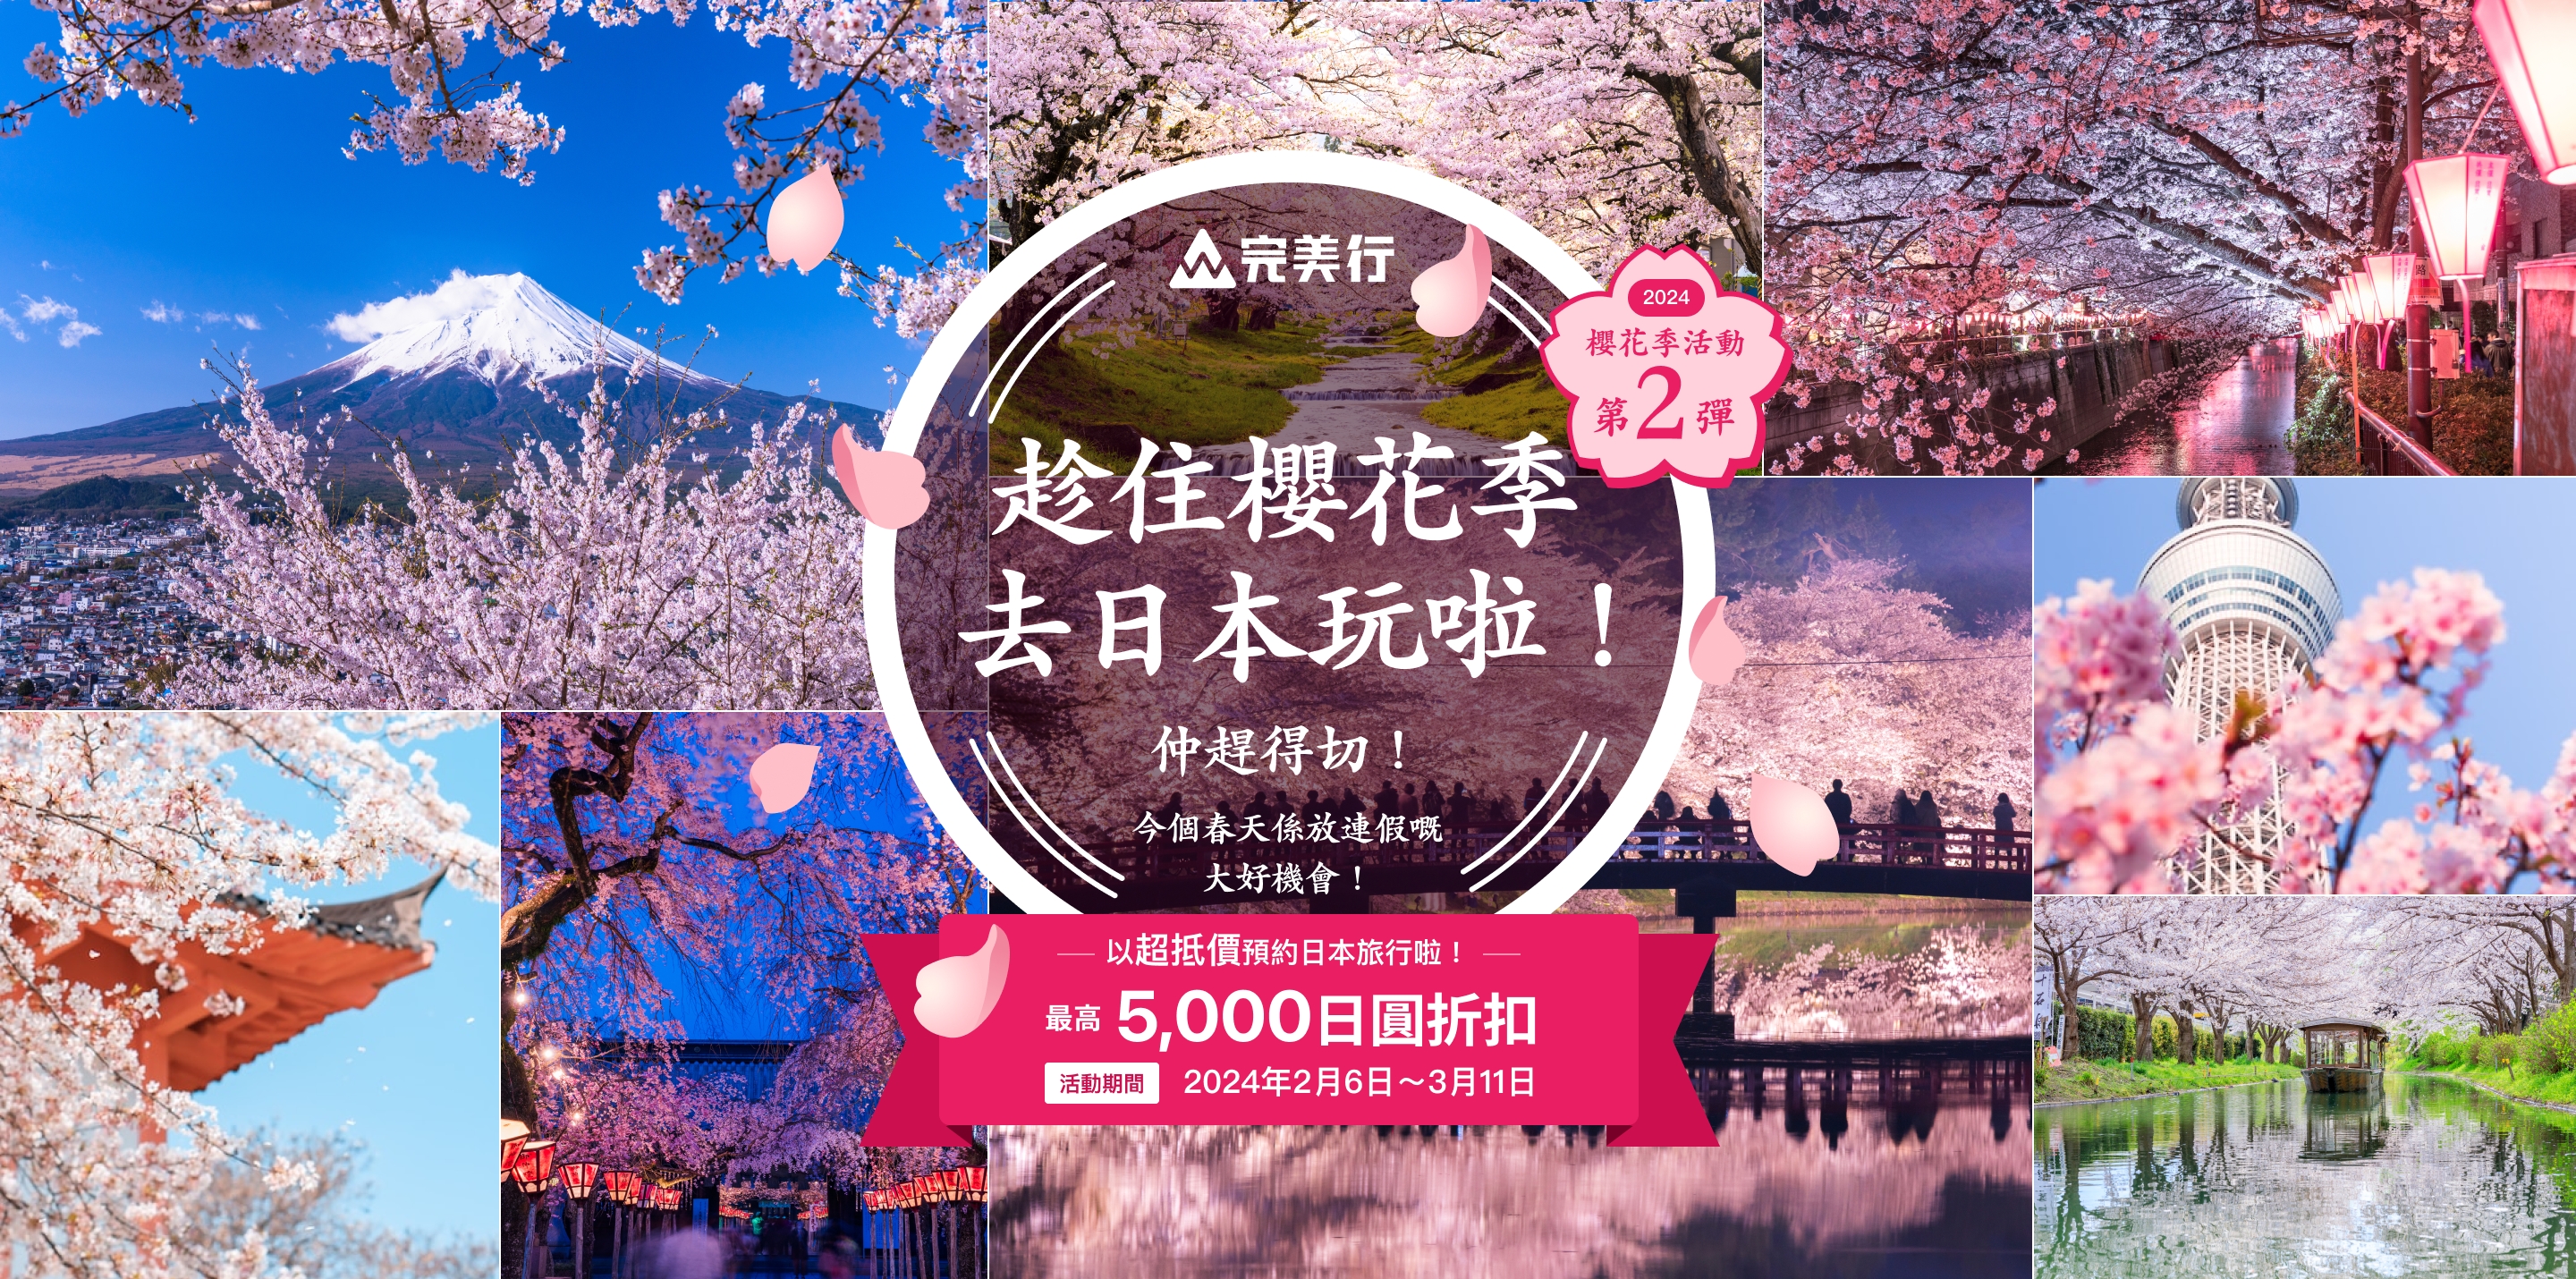 今年的春假是放連假的好機會！趁著櫻花祭出發日本吧！